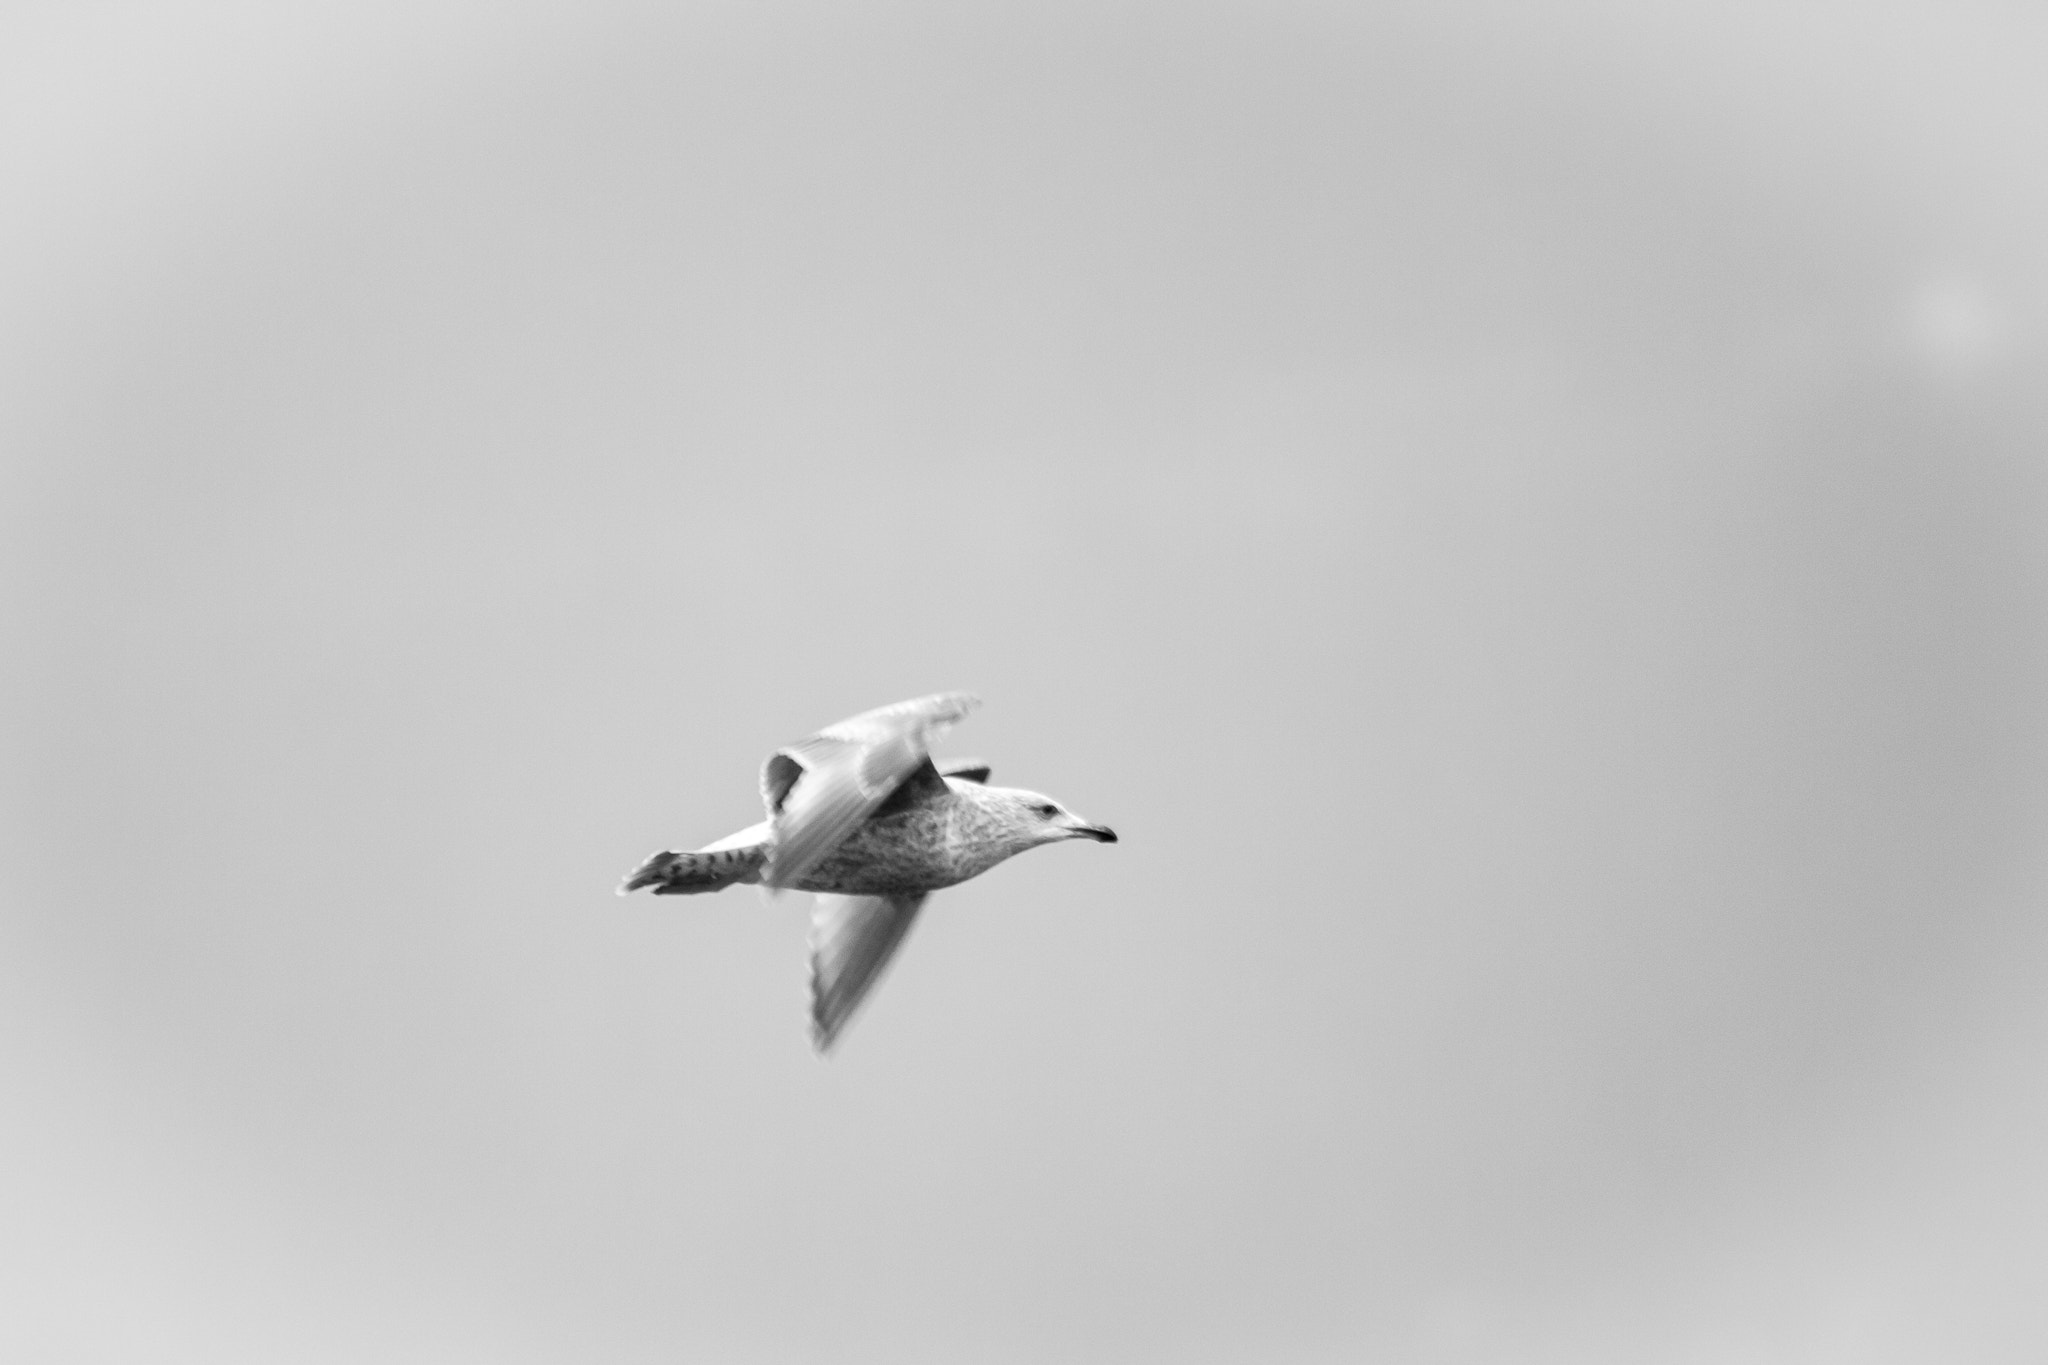 Canon EOS 50D sample photo. Fly bird photography